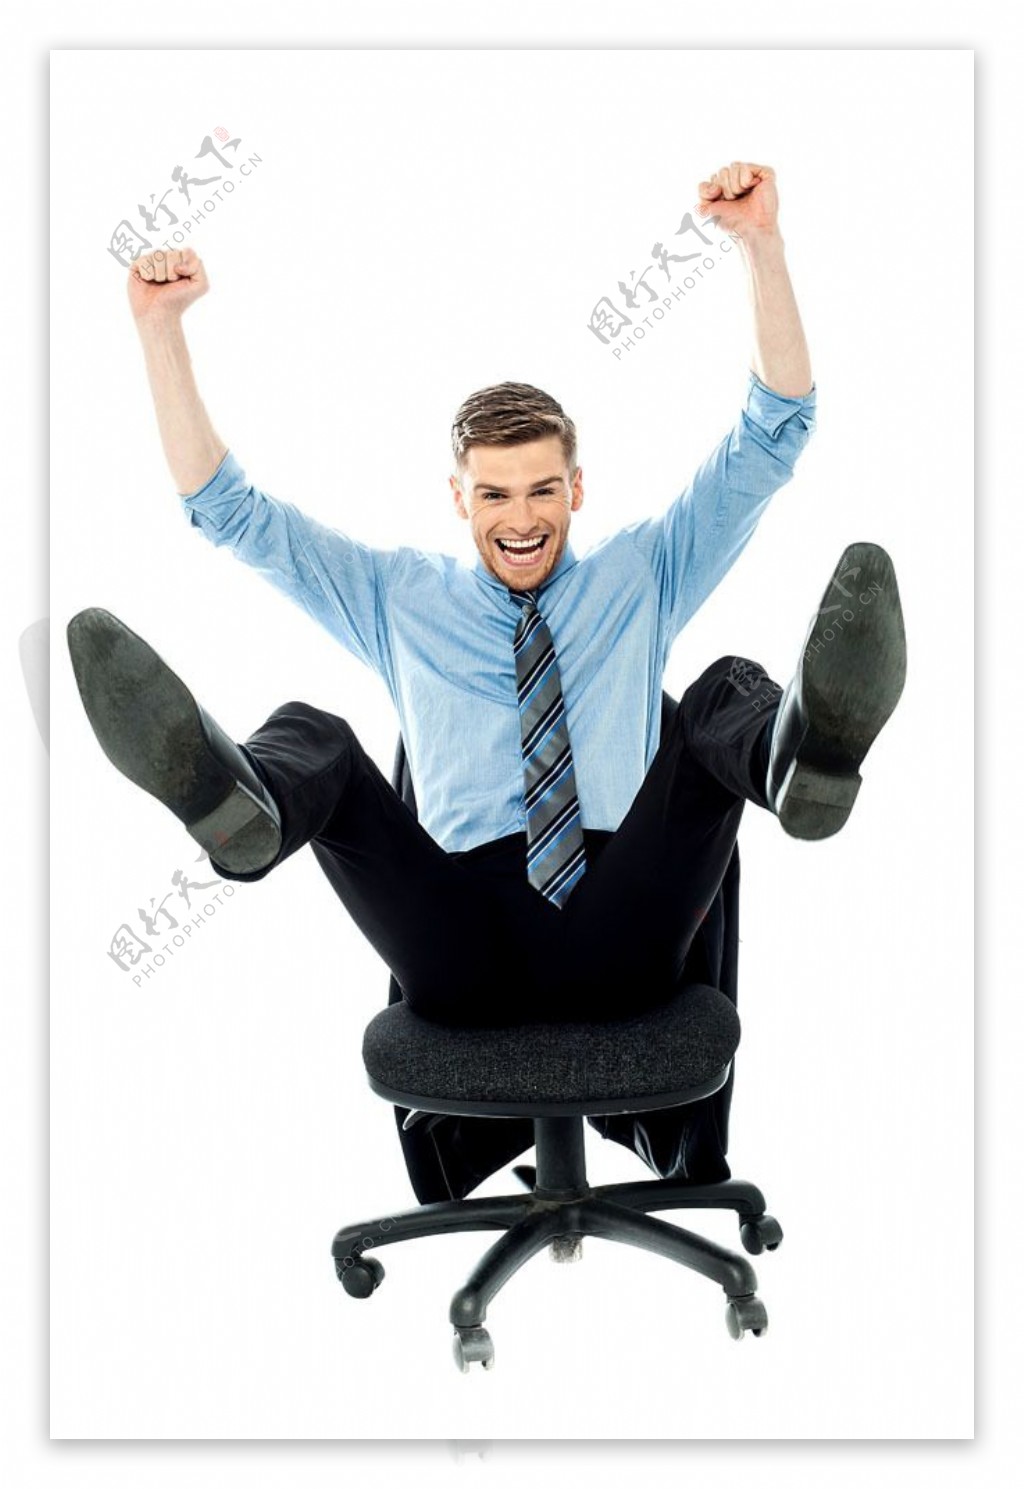 椅子上兴奋的职业男人图片